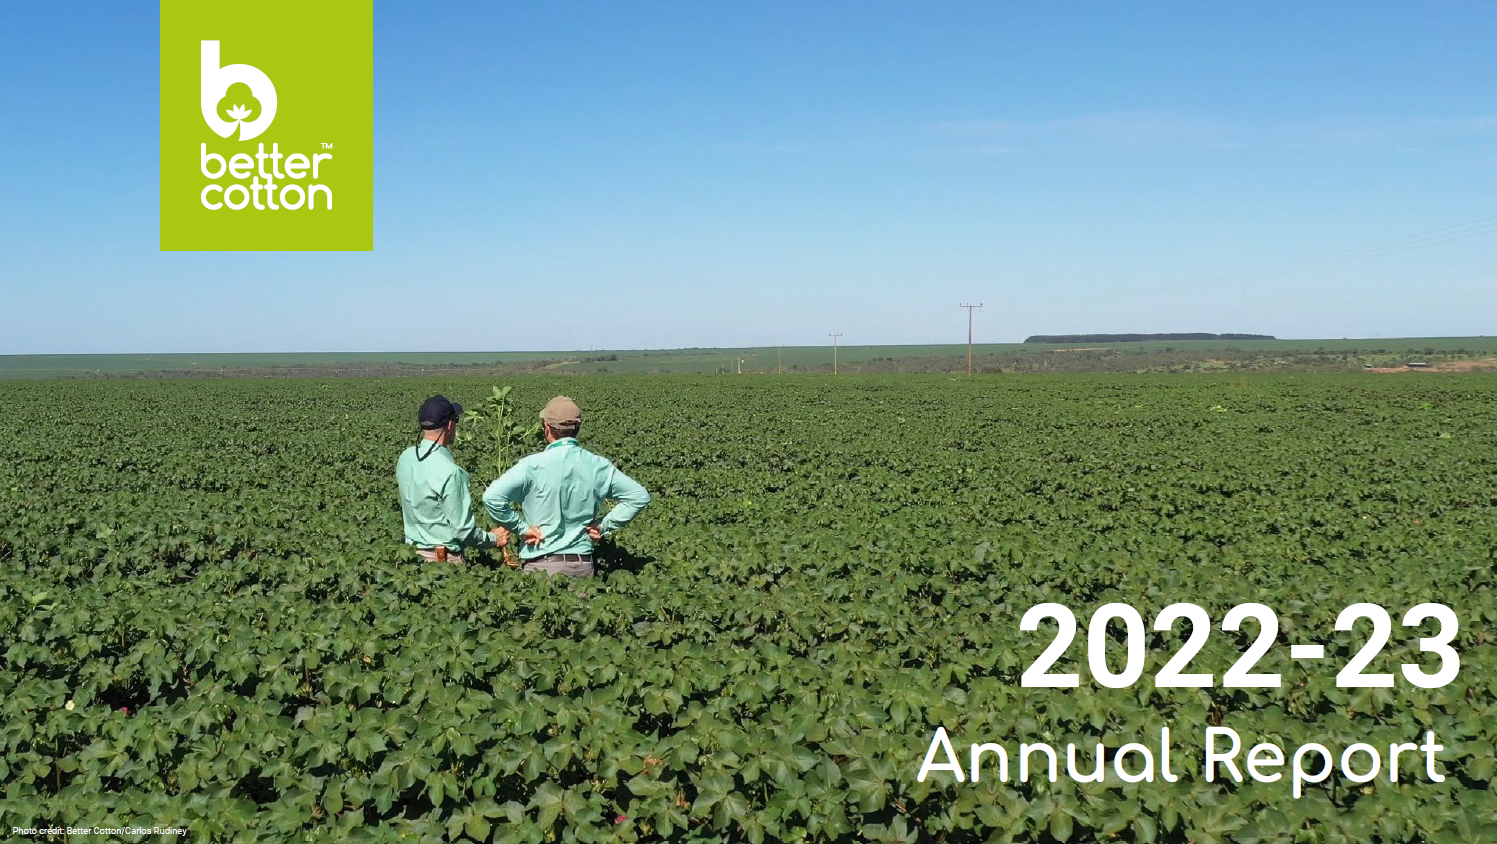 Rapport annuel Better Cotton 2022-23